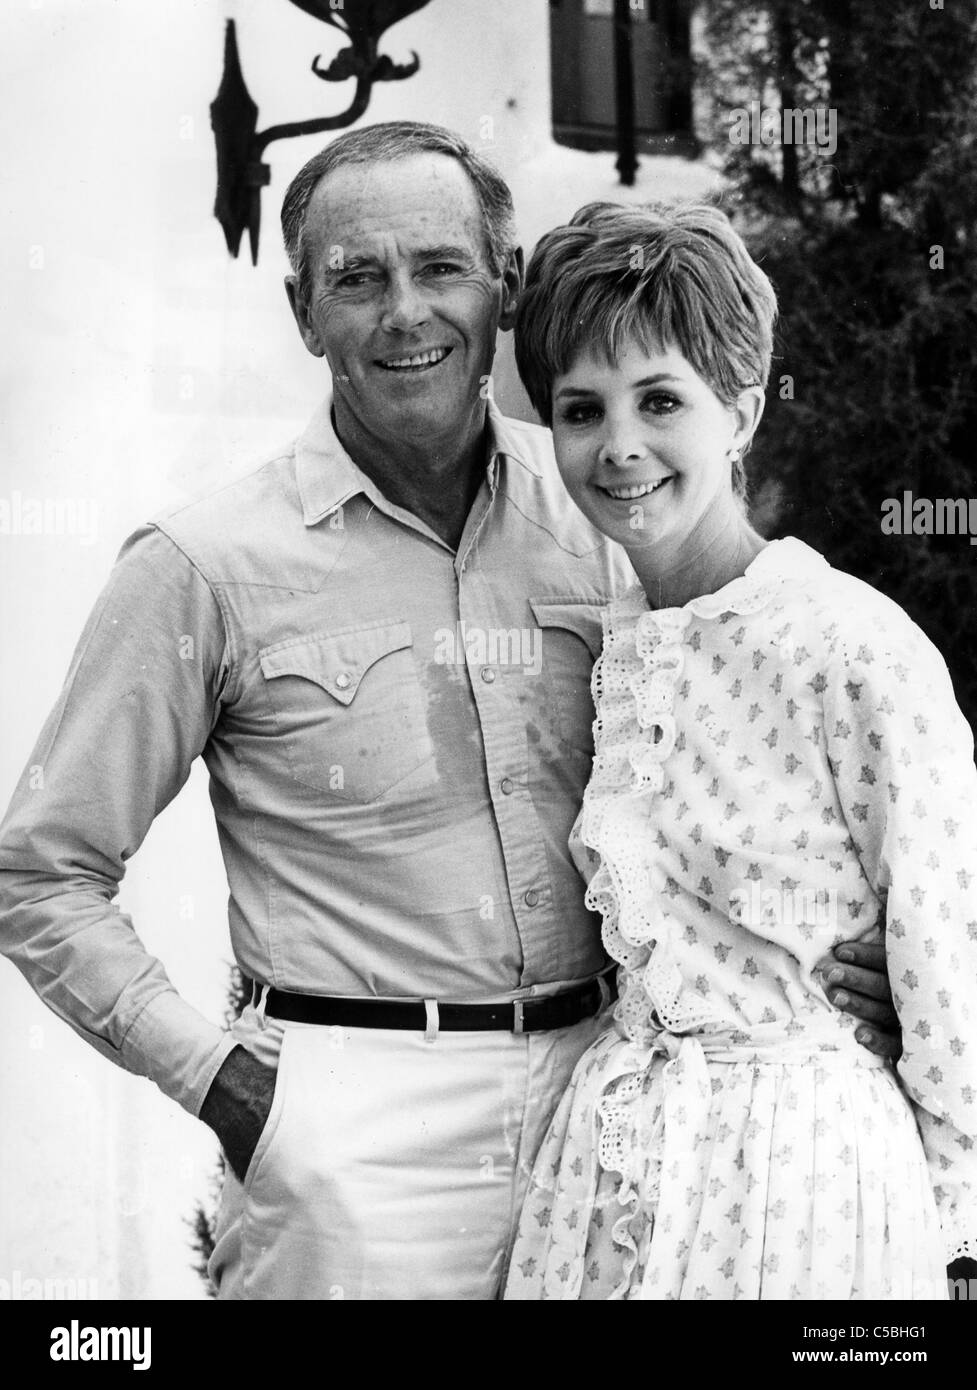 HENRY FONDA acteur américain avec sa dernière épouse actrice Shirlee Mae Adams vers 1966. Ils sont restés mariés jusqu'à sa mort en 1982. Banque D'Images